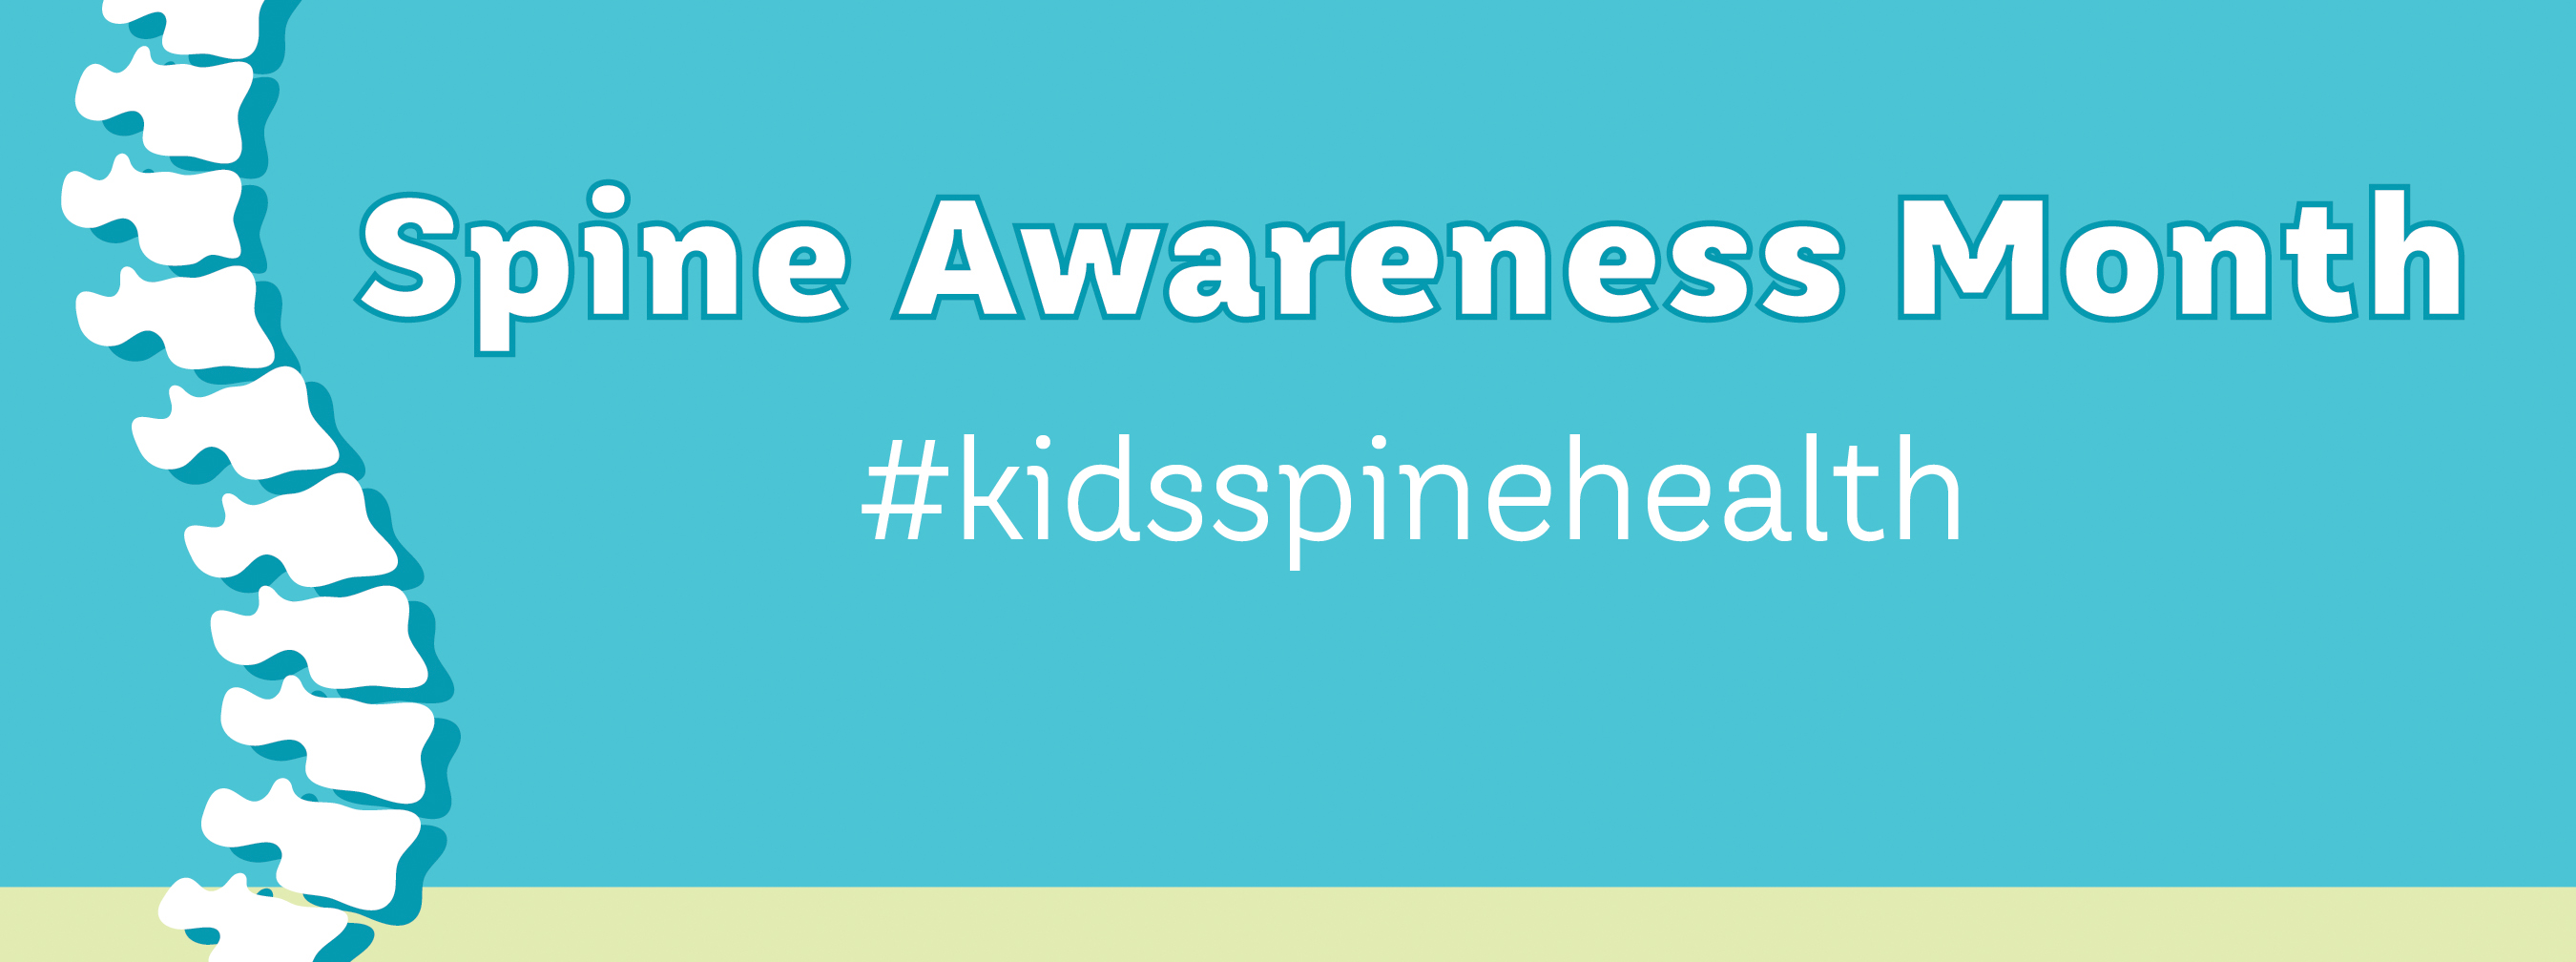 Spine Awareness Month #kidsspinehealth Gillette children's banner